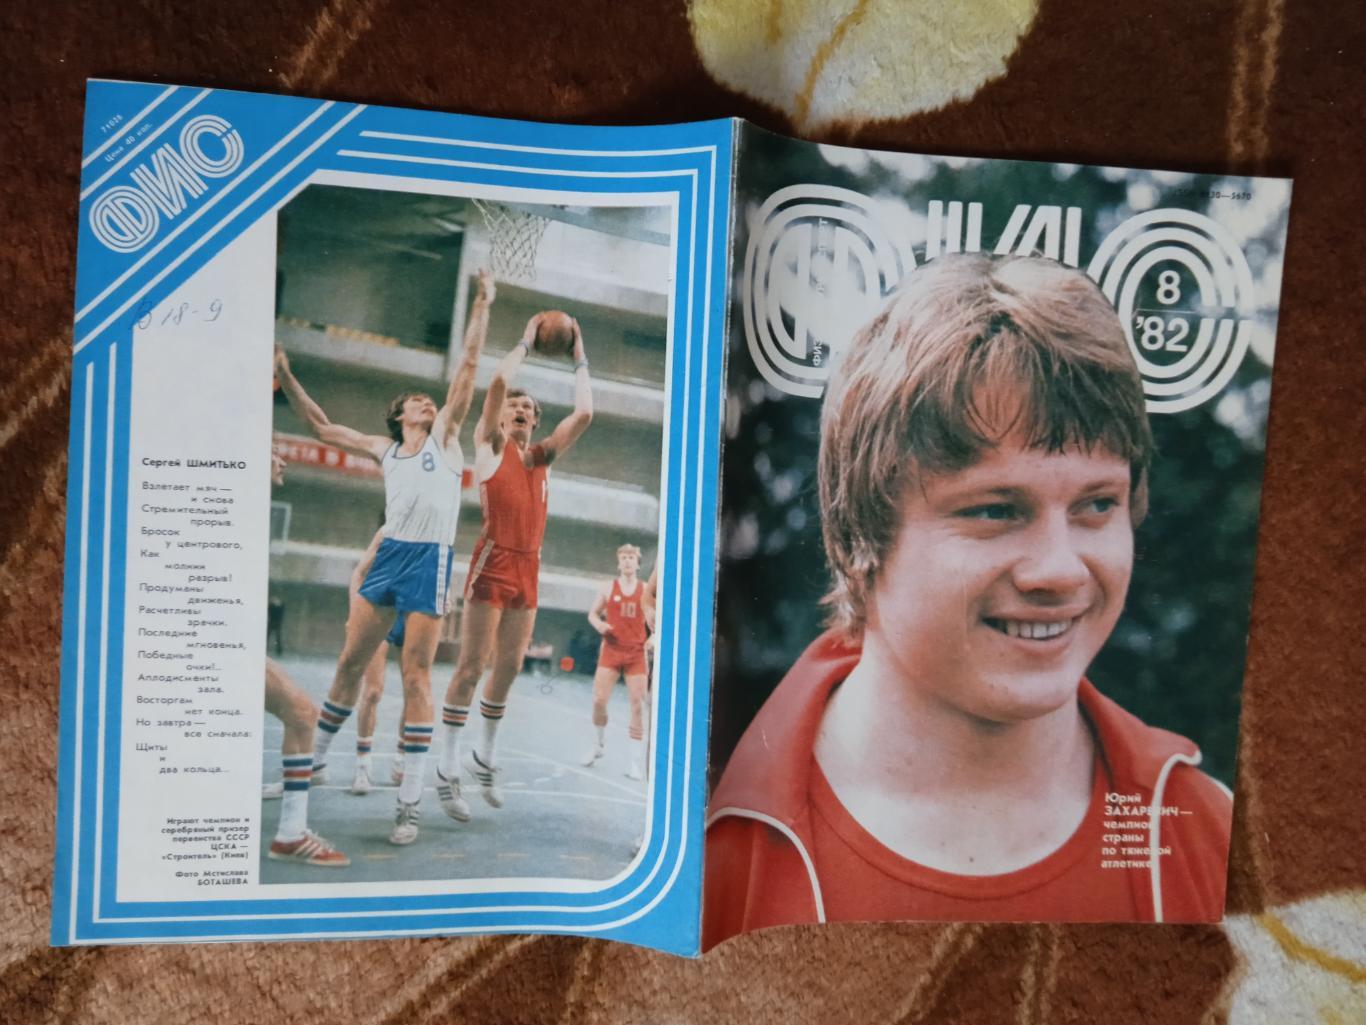 Журнал.Физкультура и спорт № 8 1982 г. (ФиС).